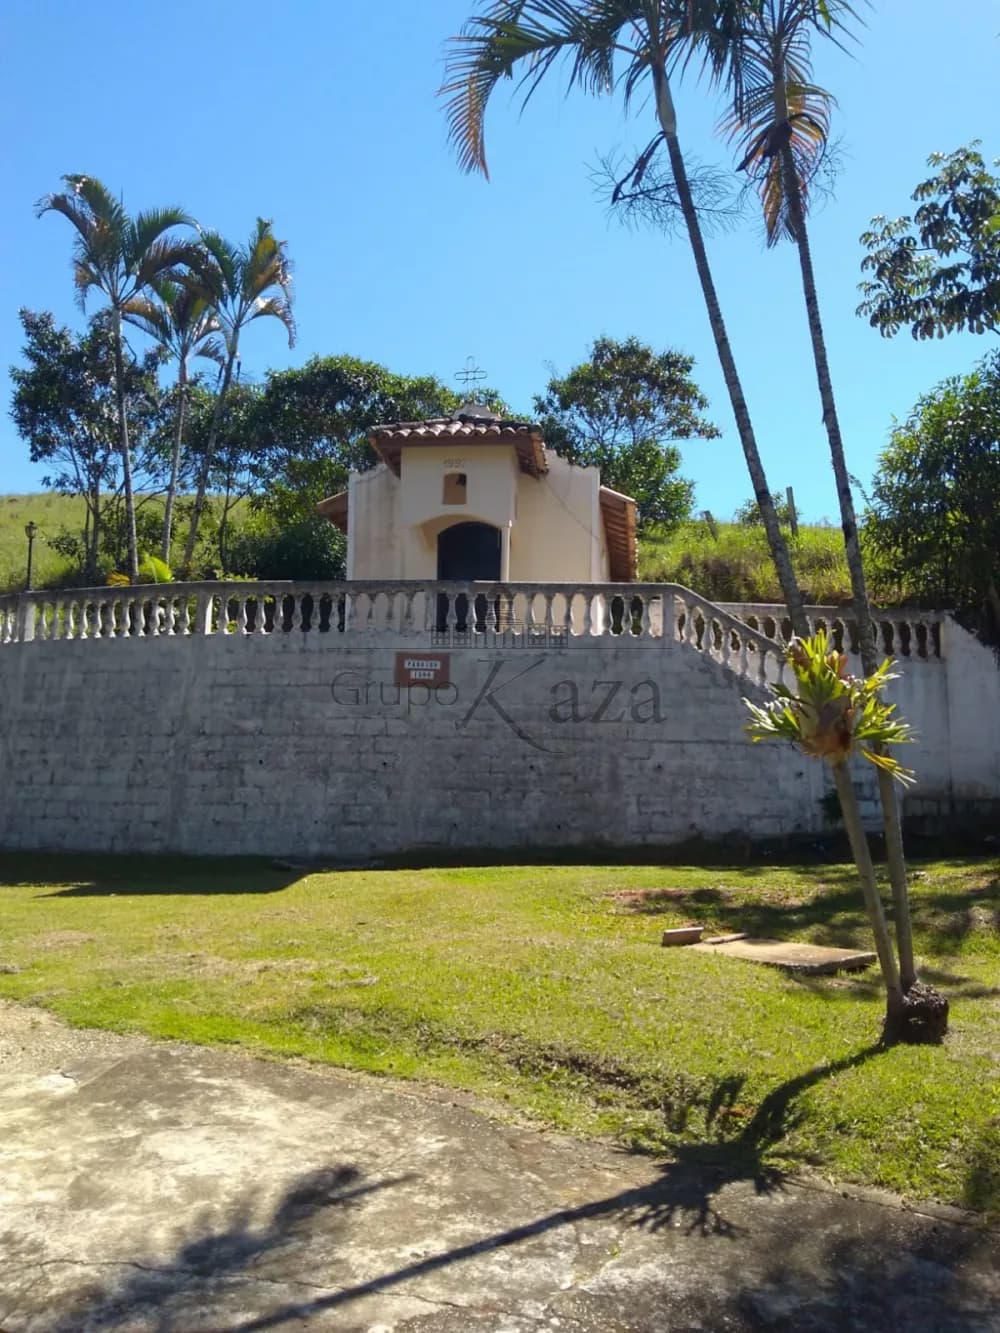 Foto 9 de Rural Chácara em Condomínio Residencial Jaguari - Área 5, São José dos Campos - imagem 9